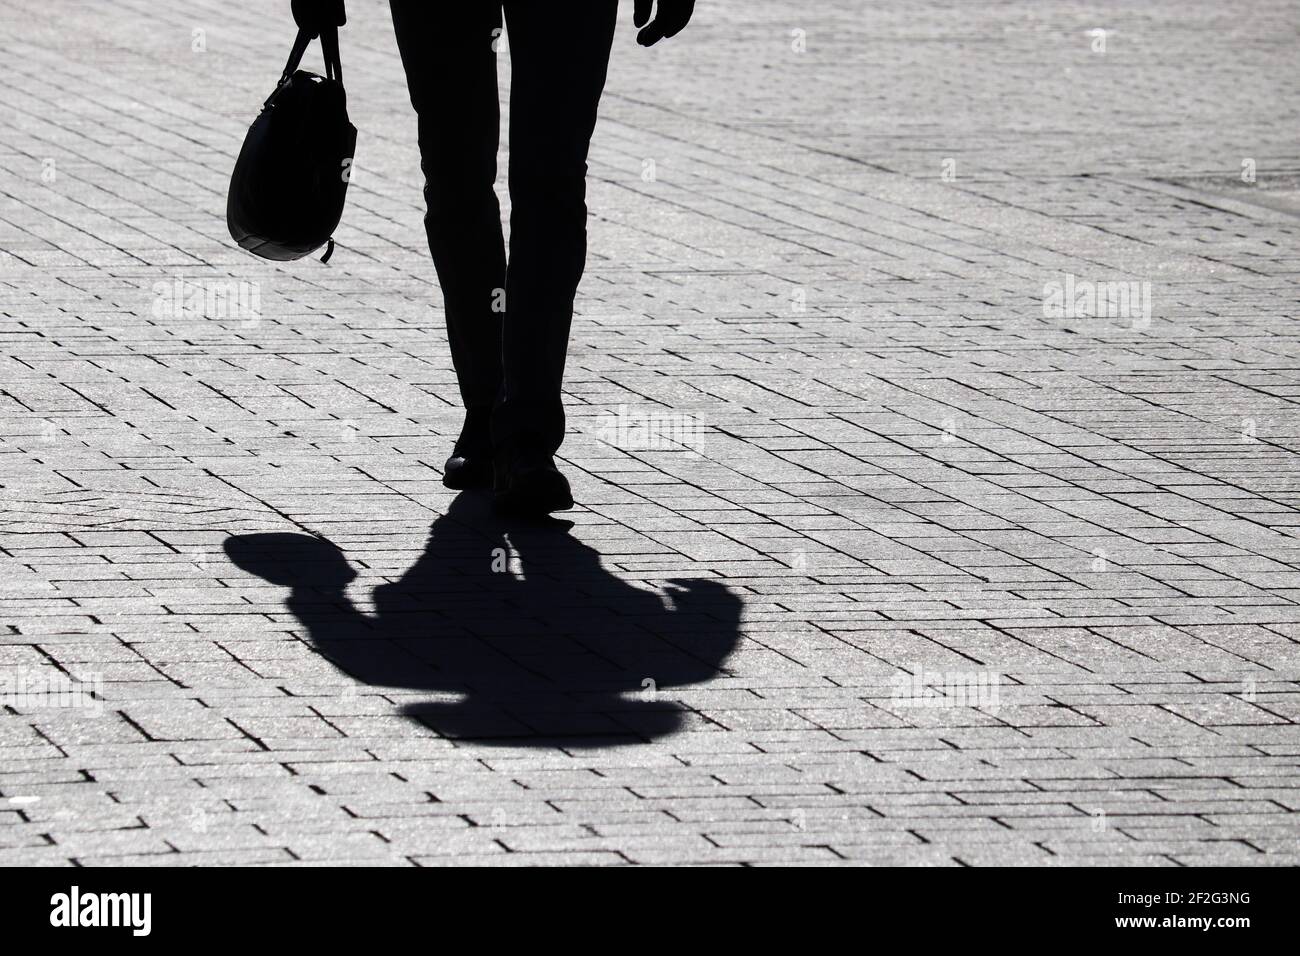 Silhouette nera di uomo sottile con valigia che cammina per strada, ombra su un marciapiede. Concetto di uomo d'affari, avanzamento di carriera Foto Stock